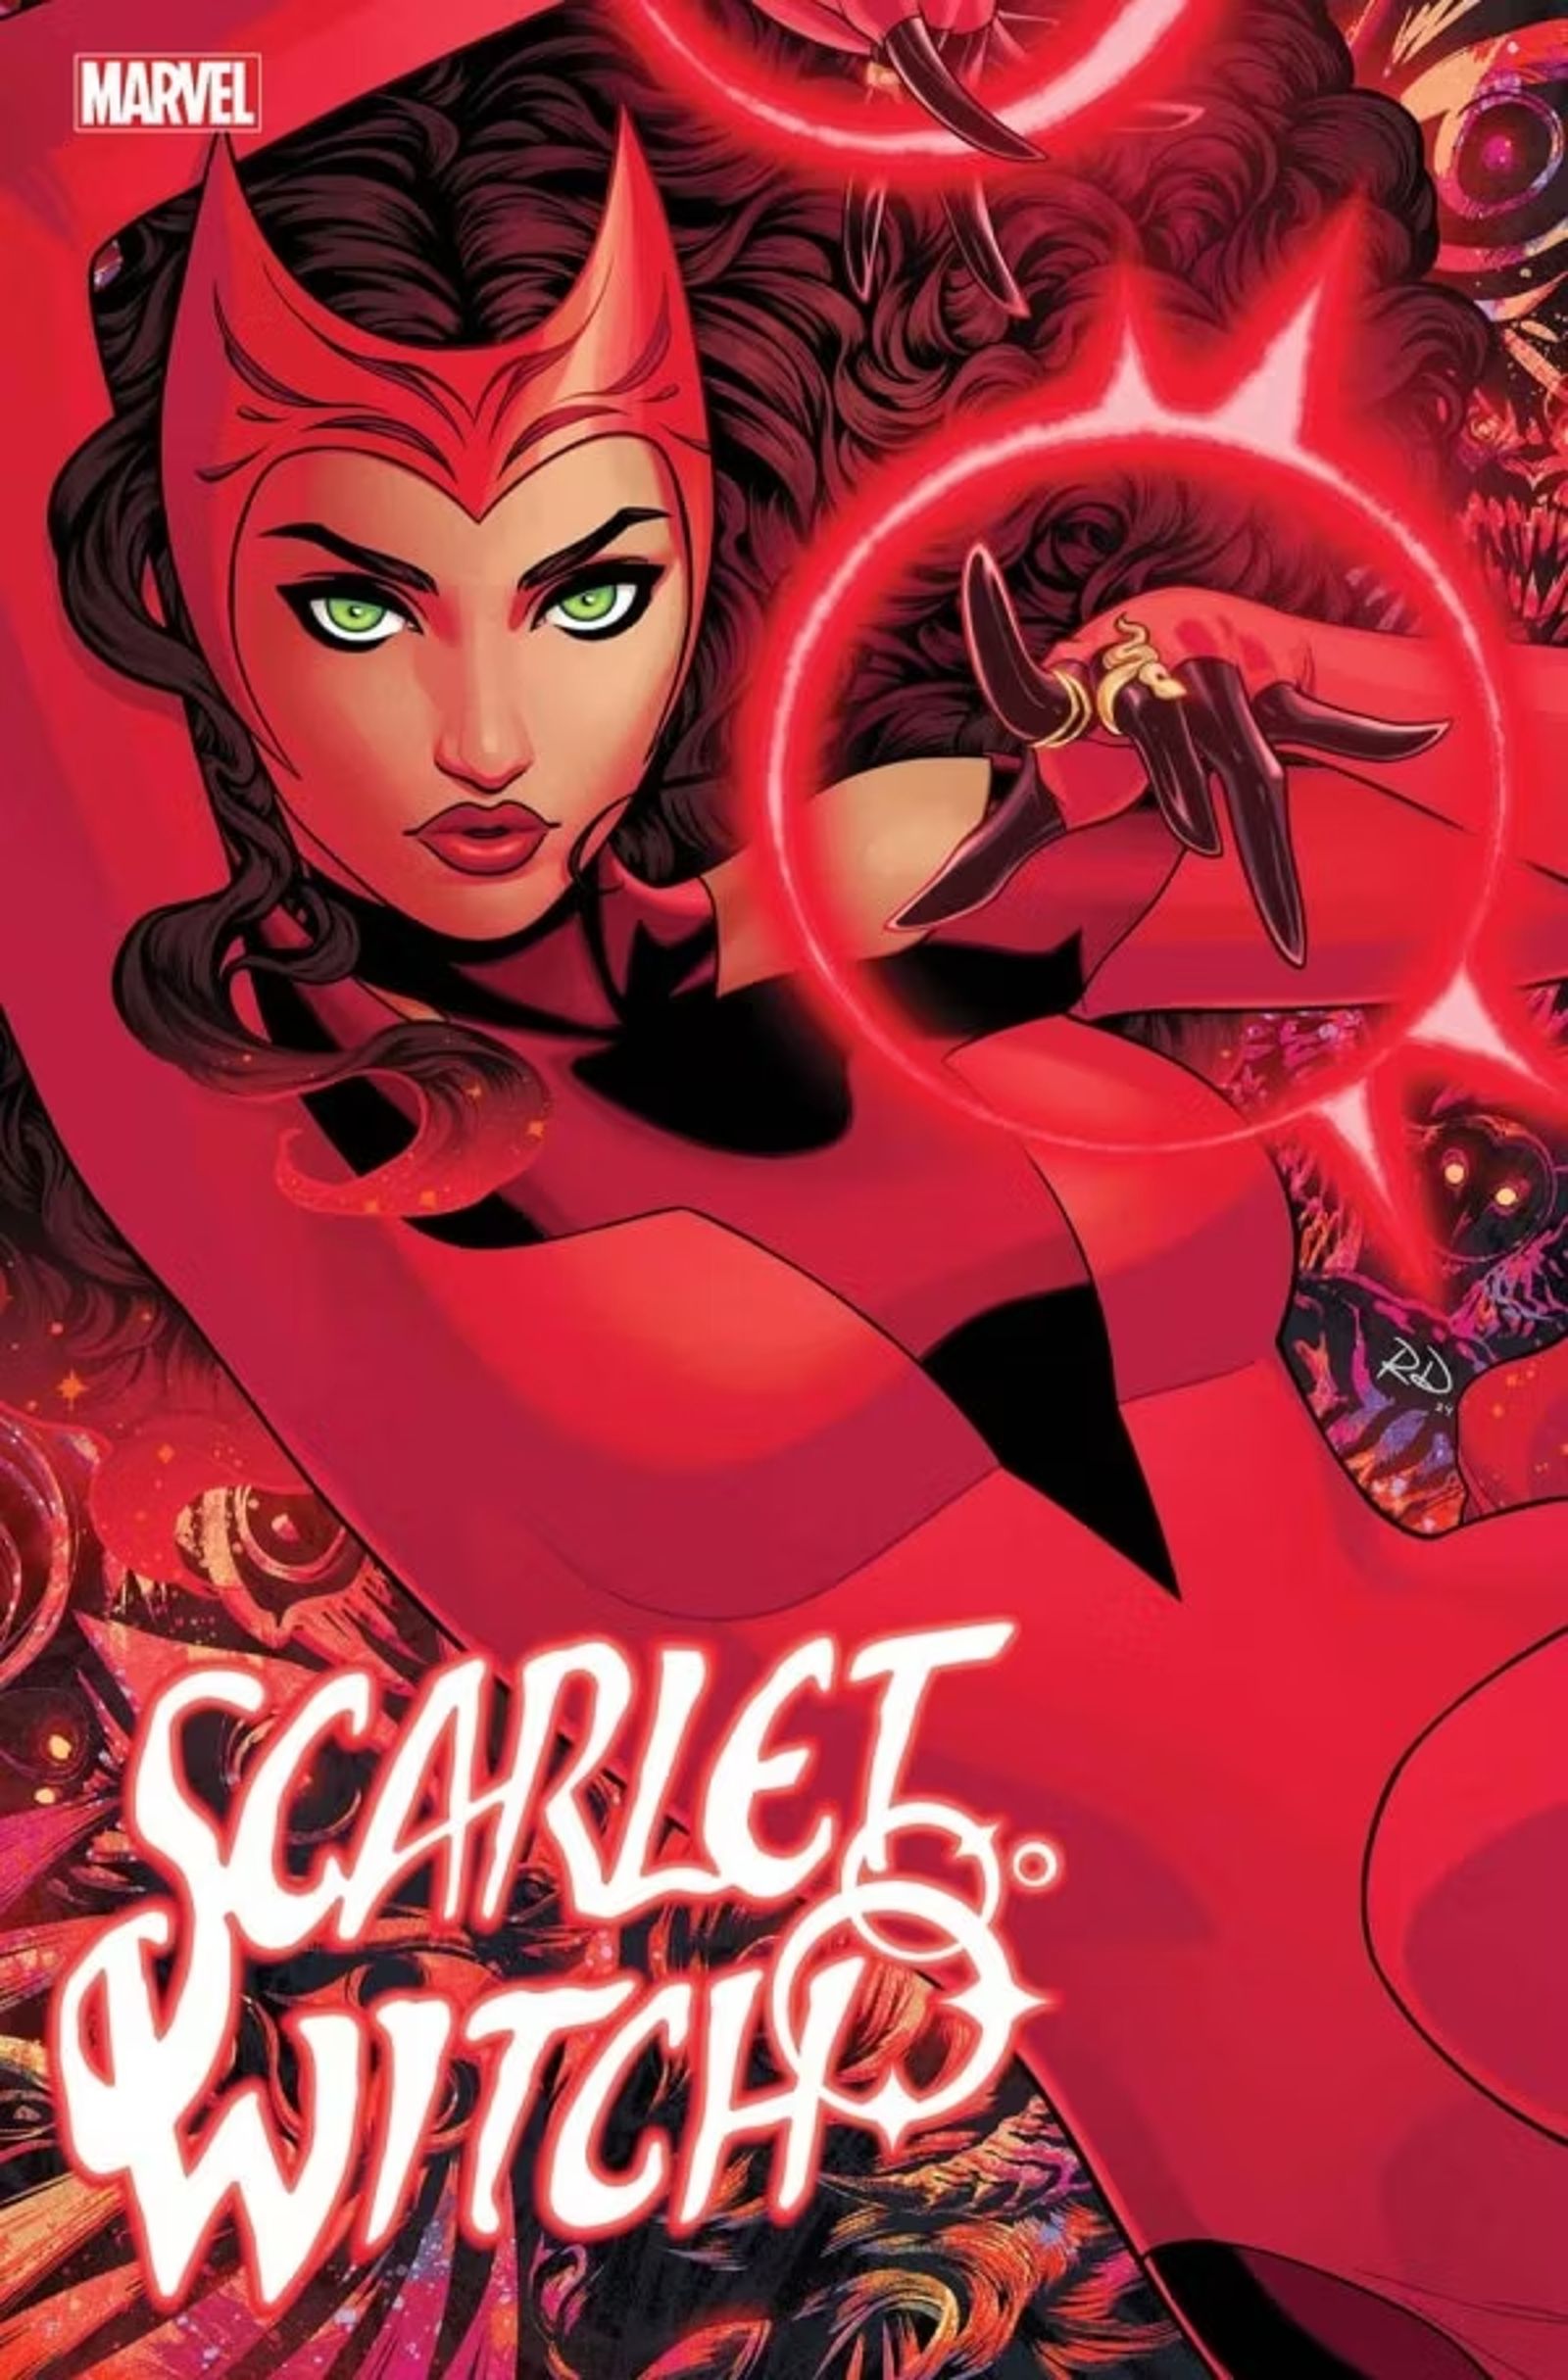 Capa de Russell Dauterman para o próximo Scarlet Witch # 1, Wanda deitada e lançando um feitiço com uma mão.